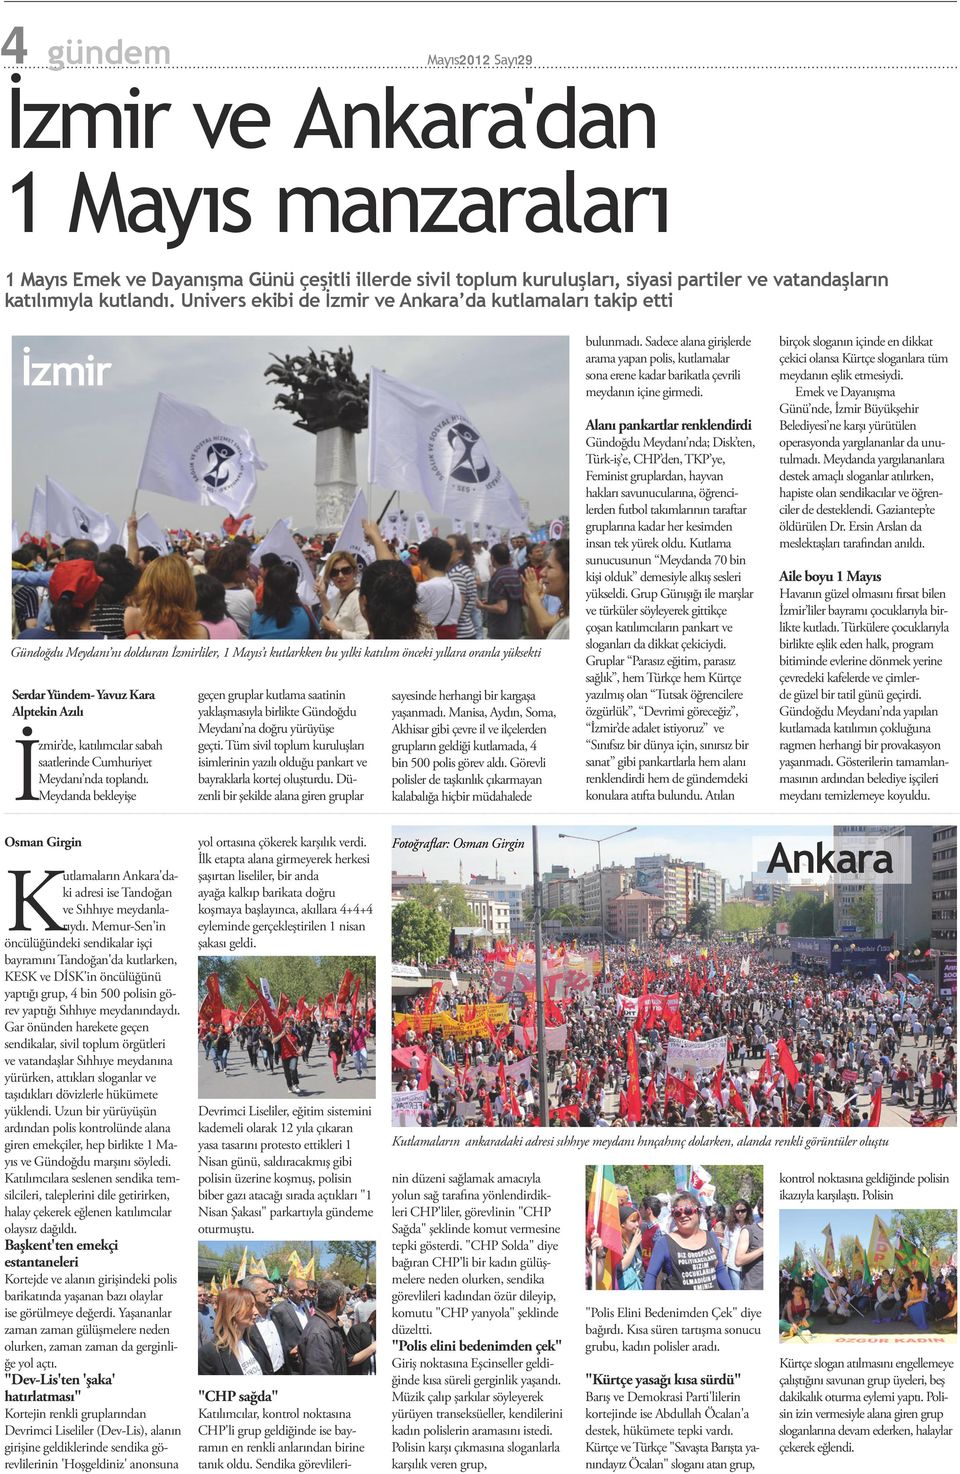 Kara Alptekin Azılı İzmir de, katılımcılar sabah saatlerinde Cumhuriyet Meydanı nda toplandı.